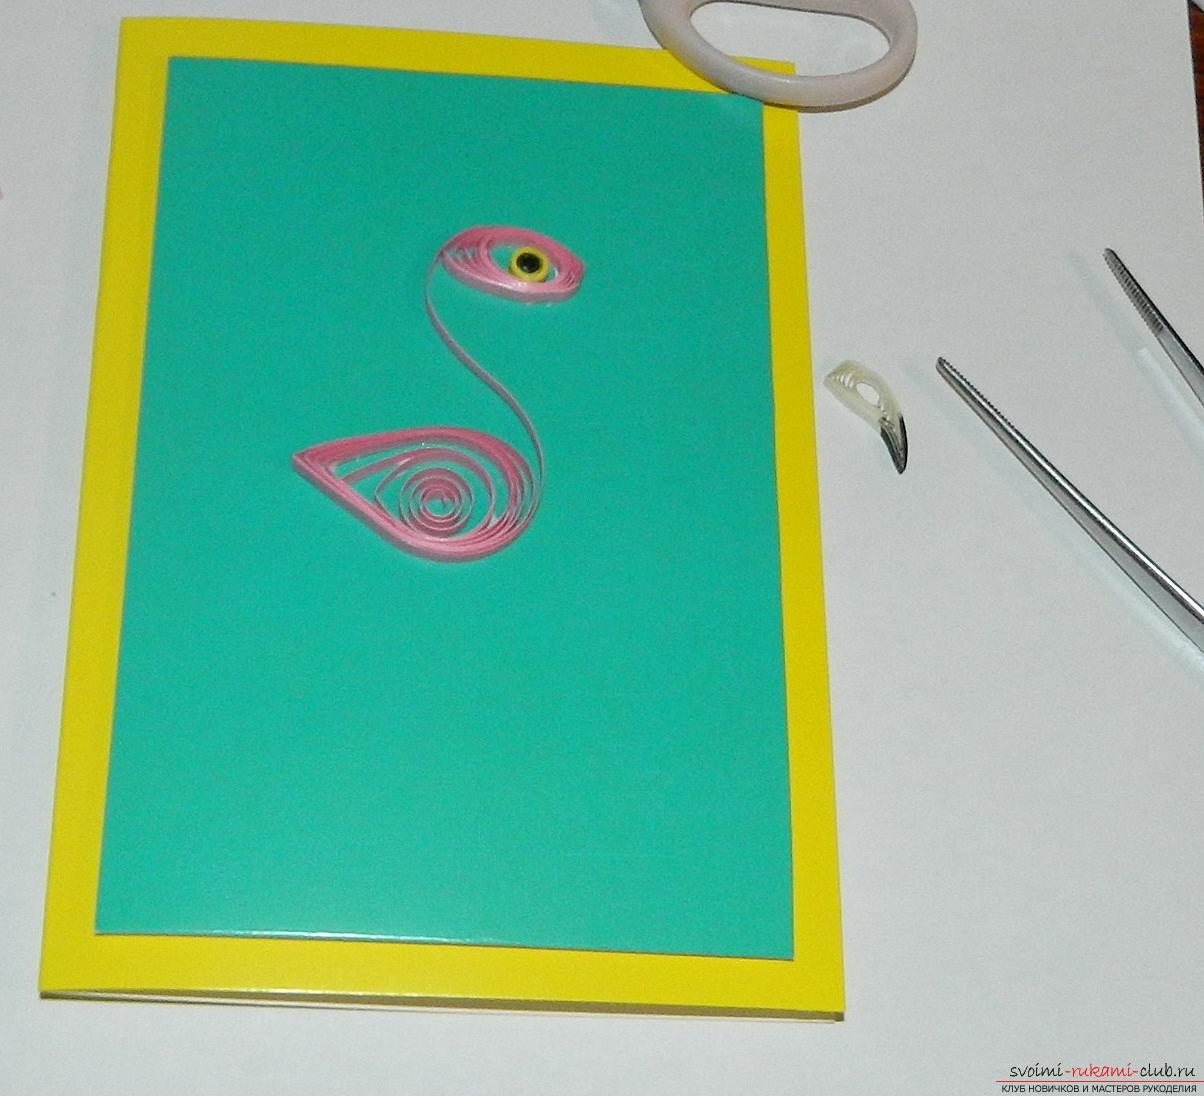 Этот мастер-класс научит как сделать красивые открытки с фламинго своими руками.. Фото №10